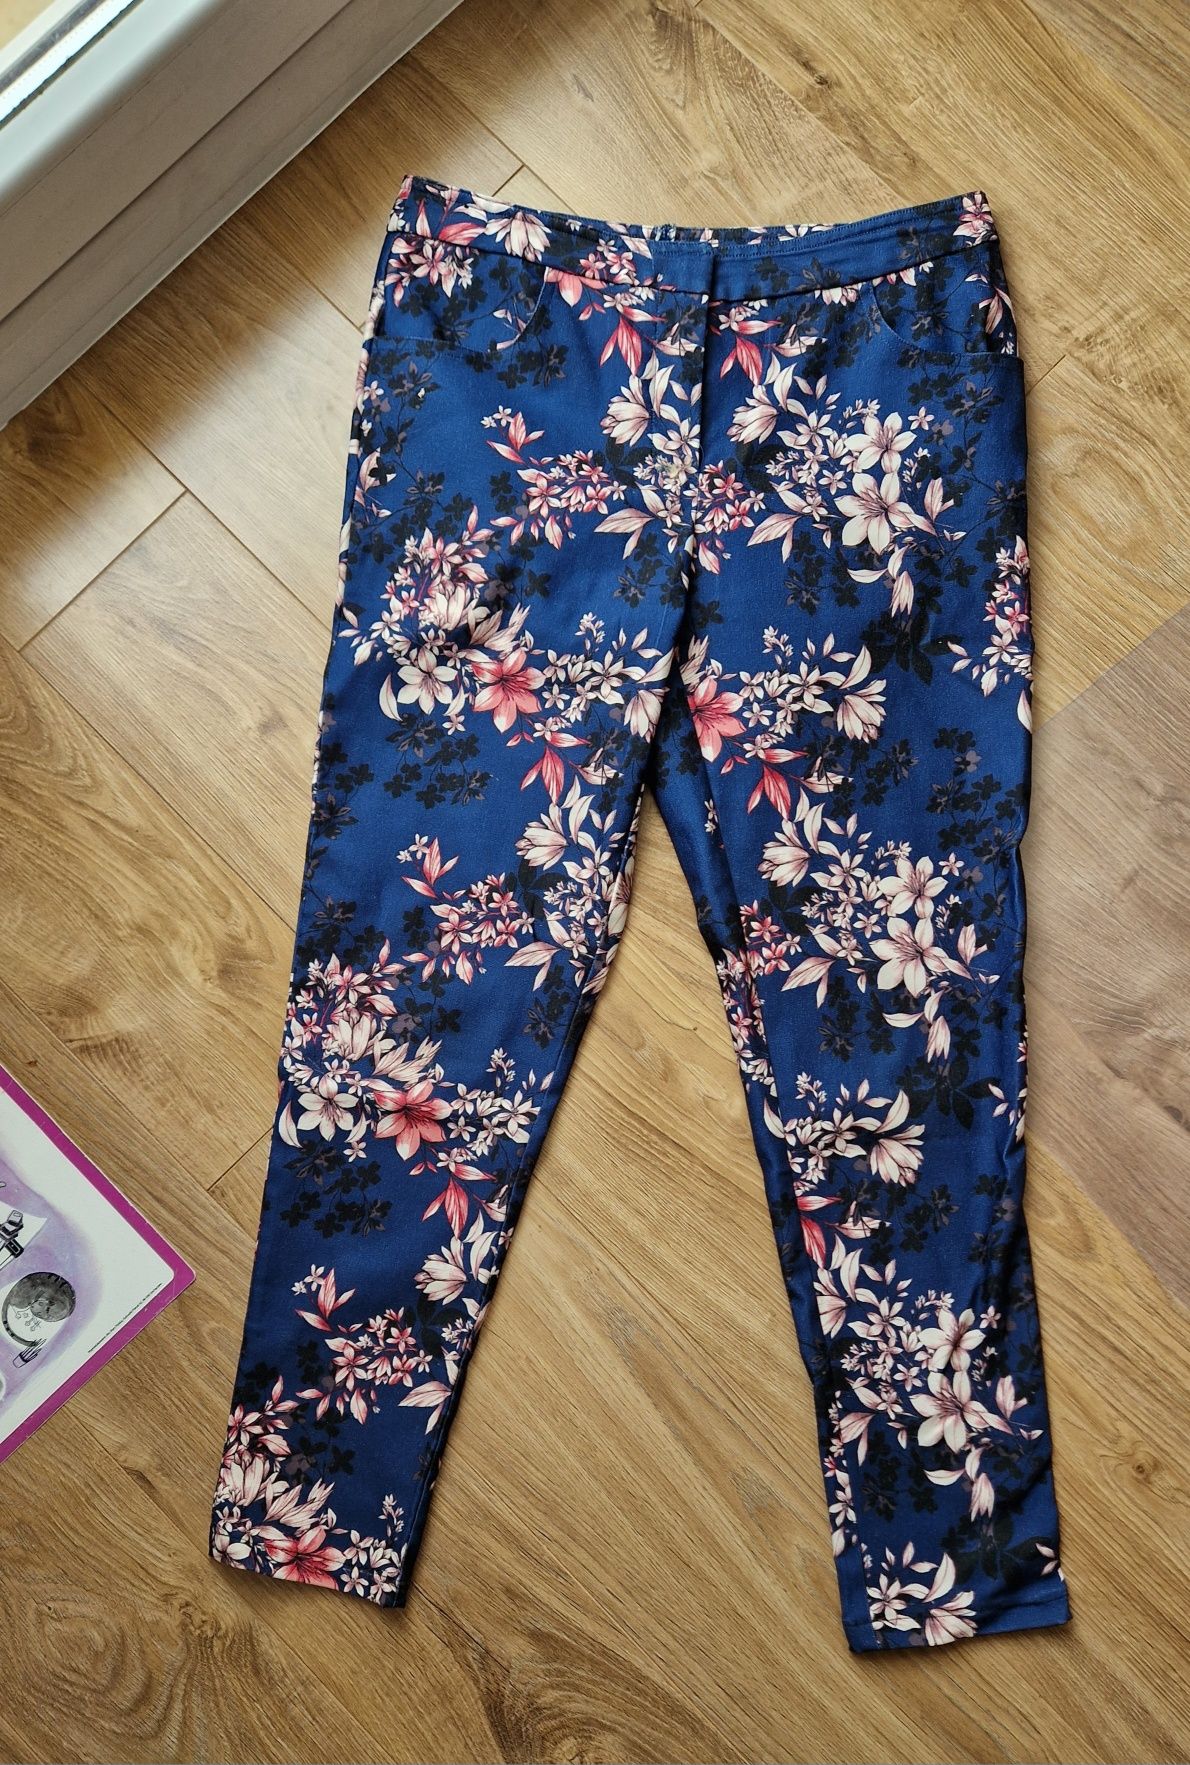 Spodnie damskie w kwiaty niebieskie 36